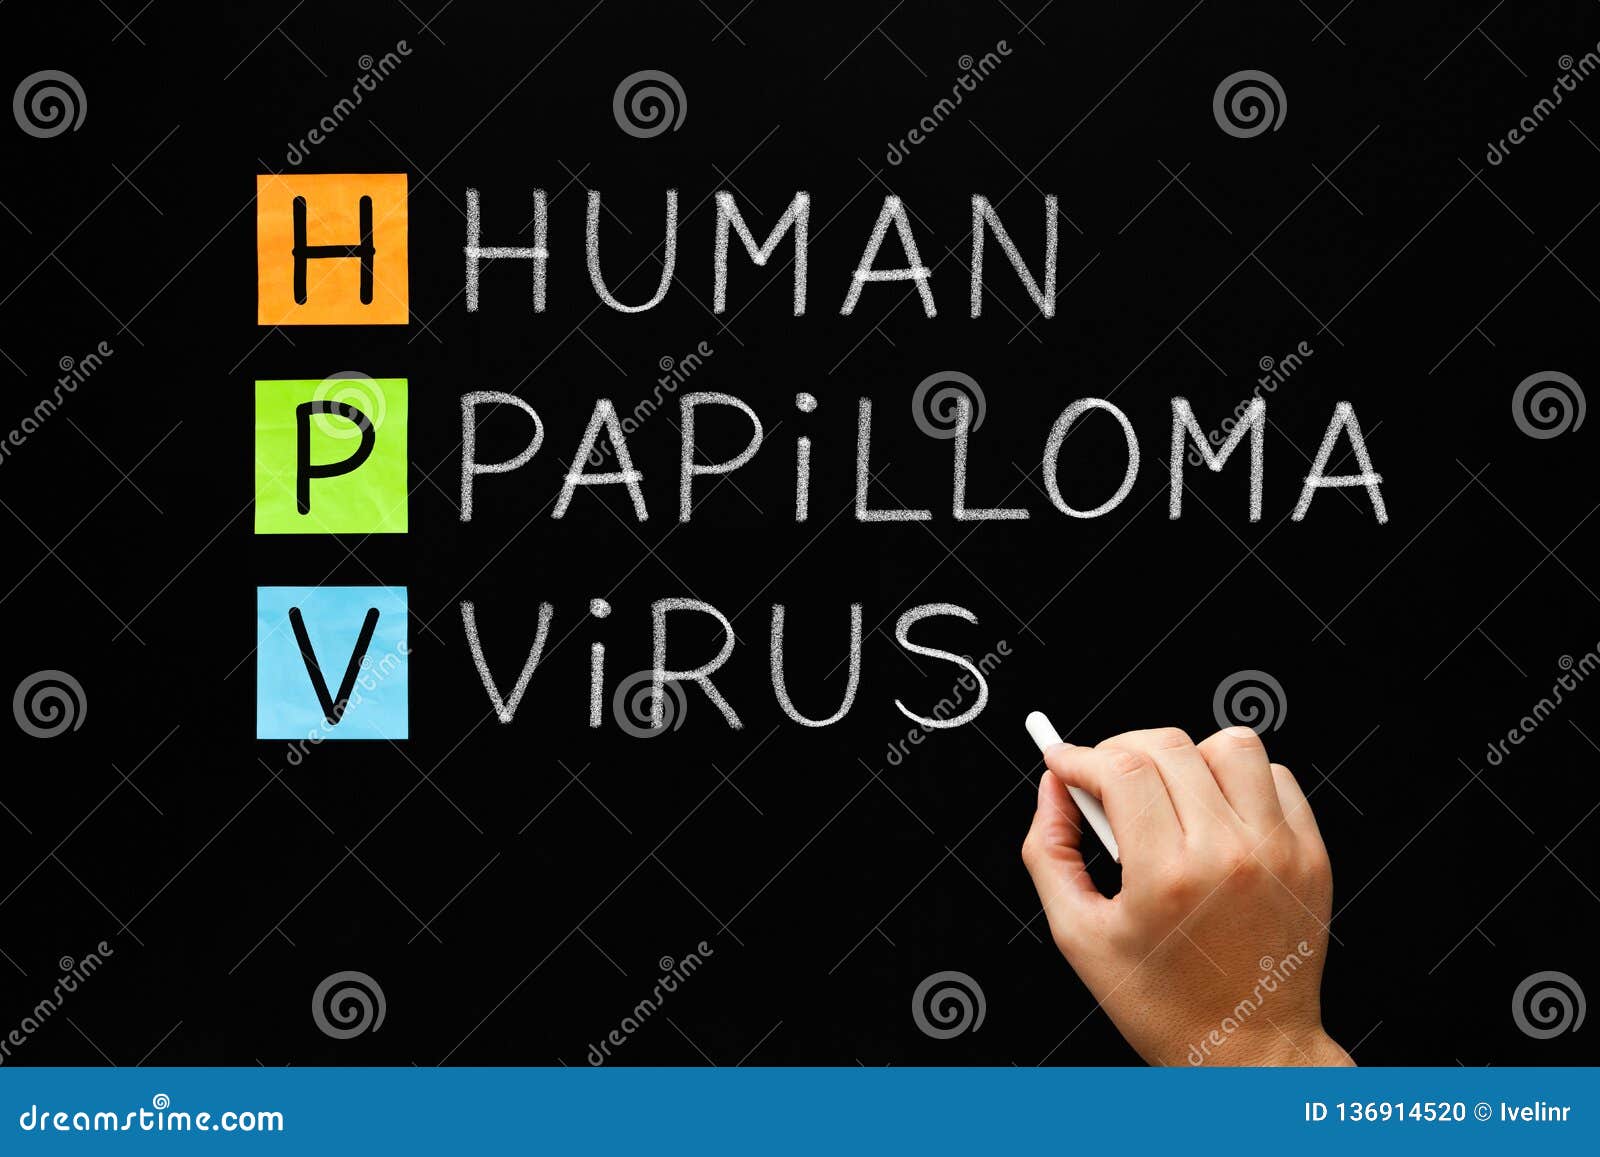 hpv - human papilloma virus on blackboard